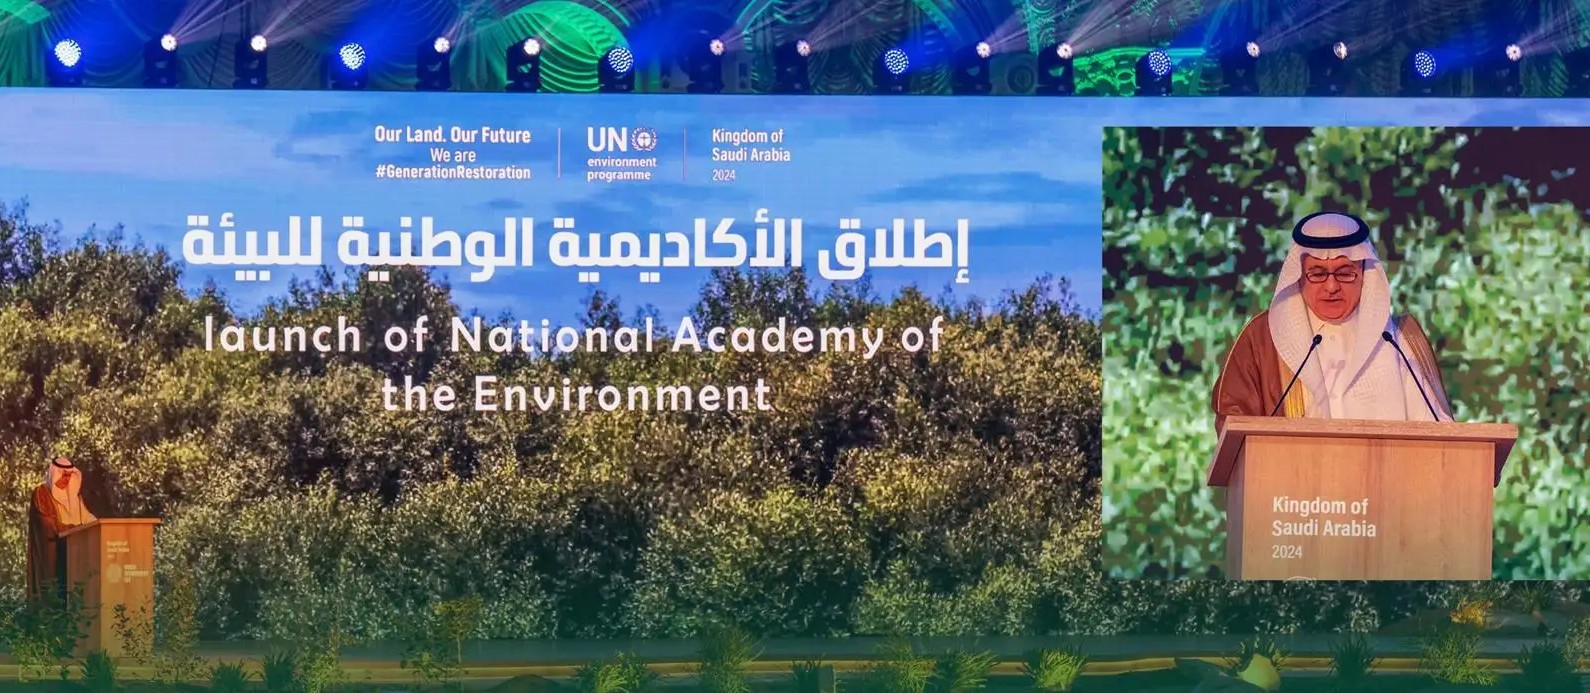 المملكة تعلن إطلاق أكاديمية وطنية للبيئة وبرنامج للحوافز والمنح في القطاع البيئي